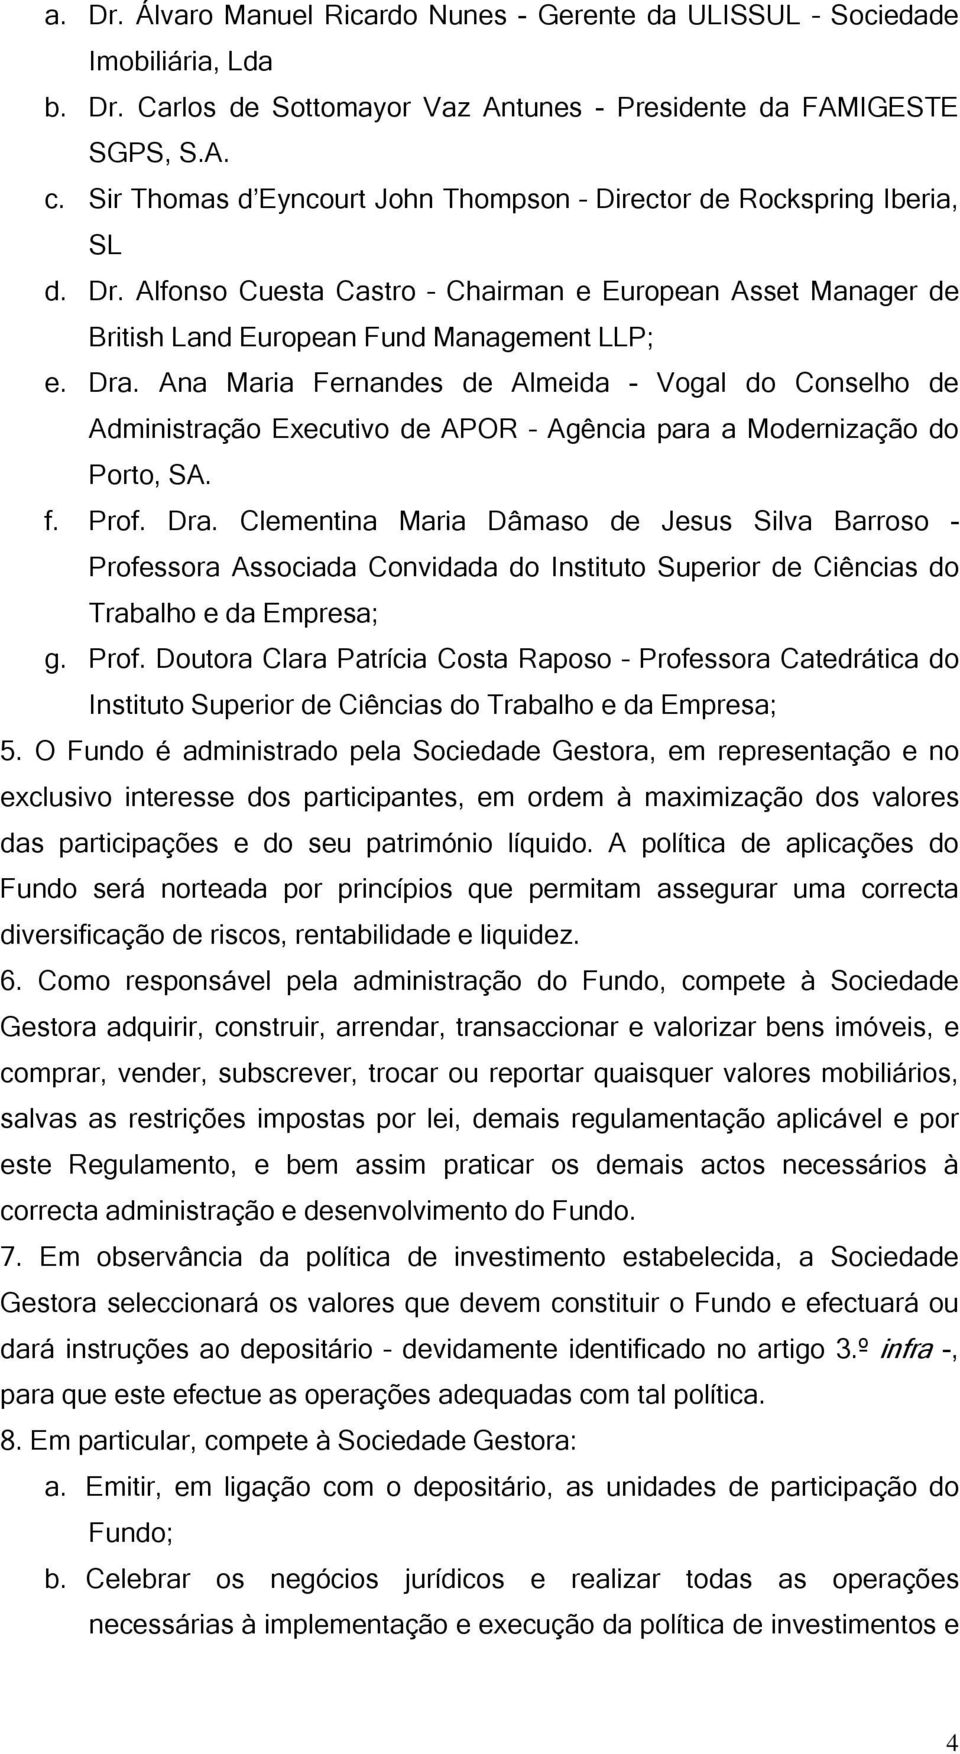 Ana Maria Fernandes de Almeida - Vogal do Conselho de Administração Executivo de APOR Agência para a Modernização do Porto, SA. f. Prof. Dra.